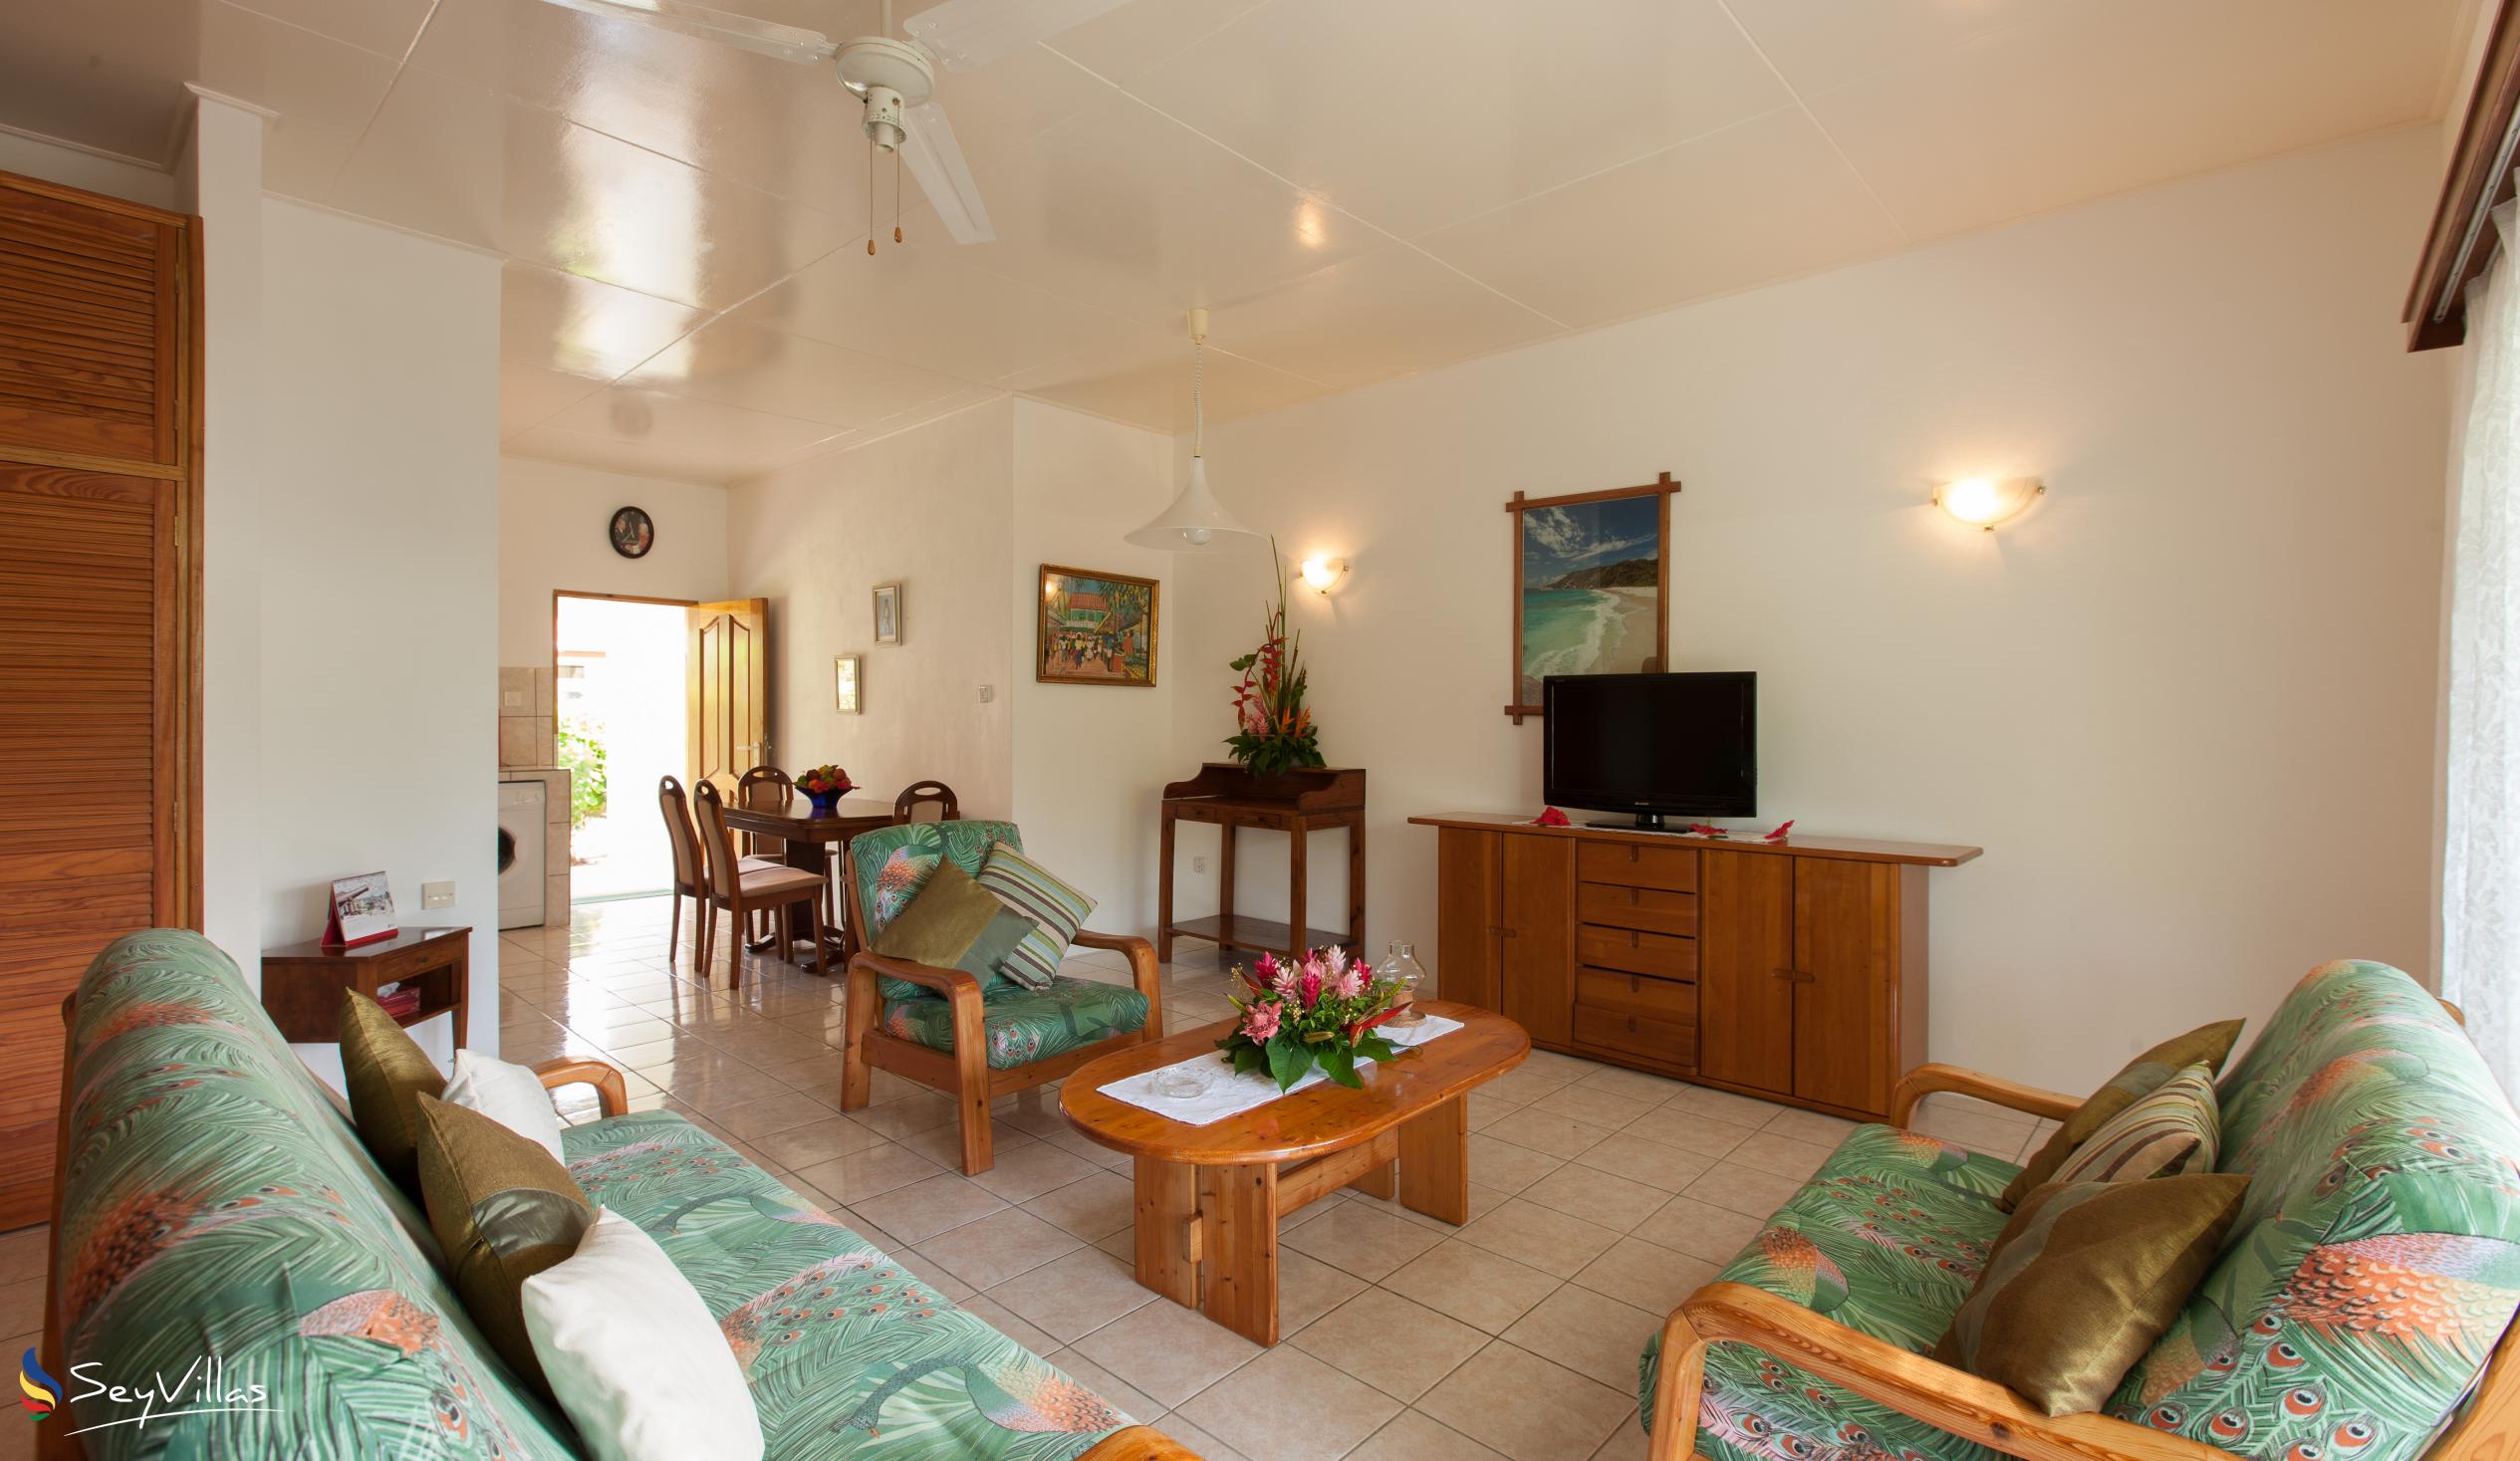 Foto 41: Le Relax St. Joseph Guest House - Chambre Familiale - Praslin (Seychelles)